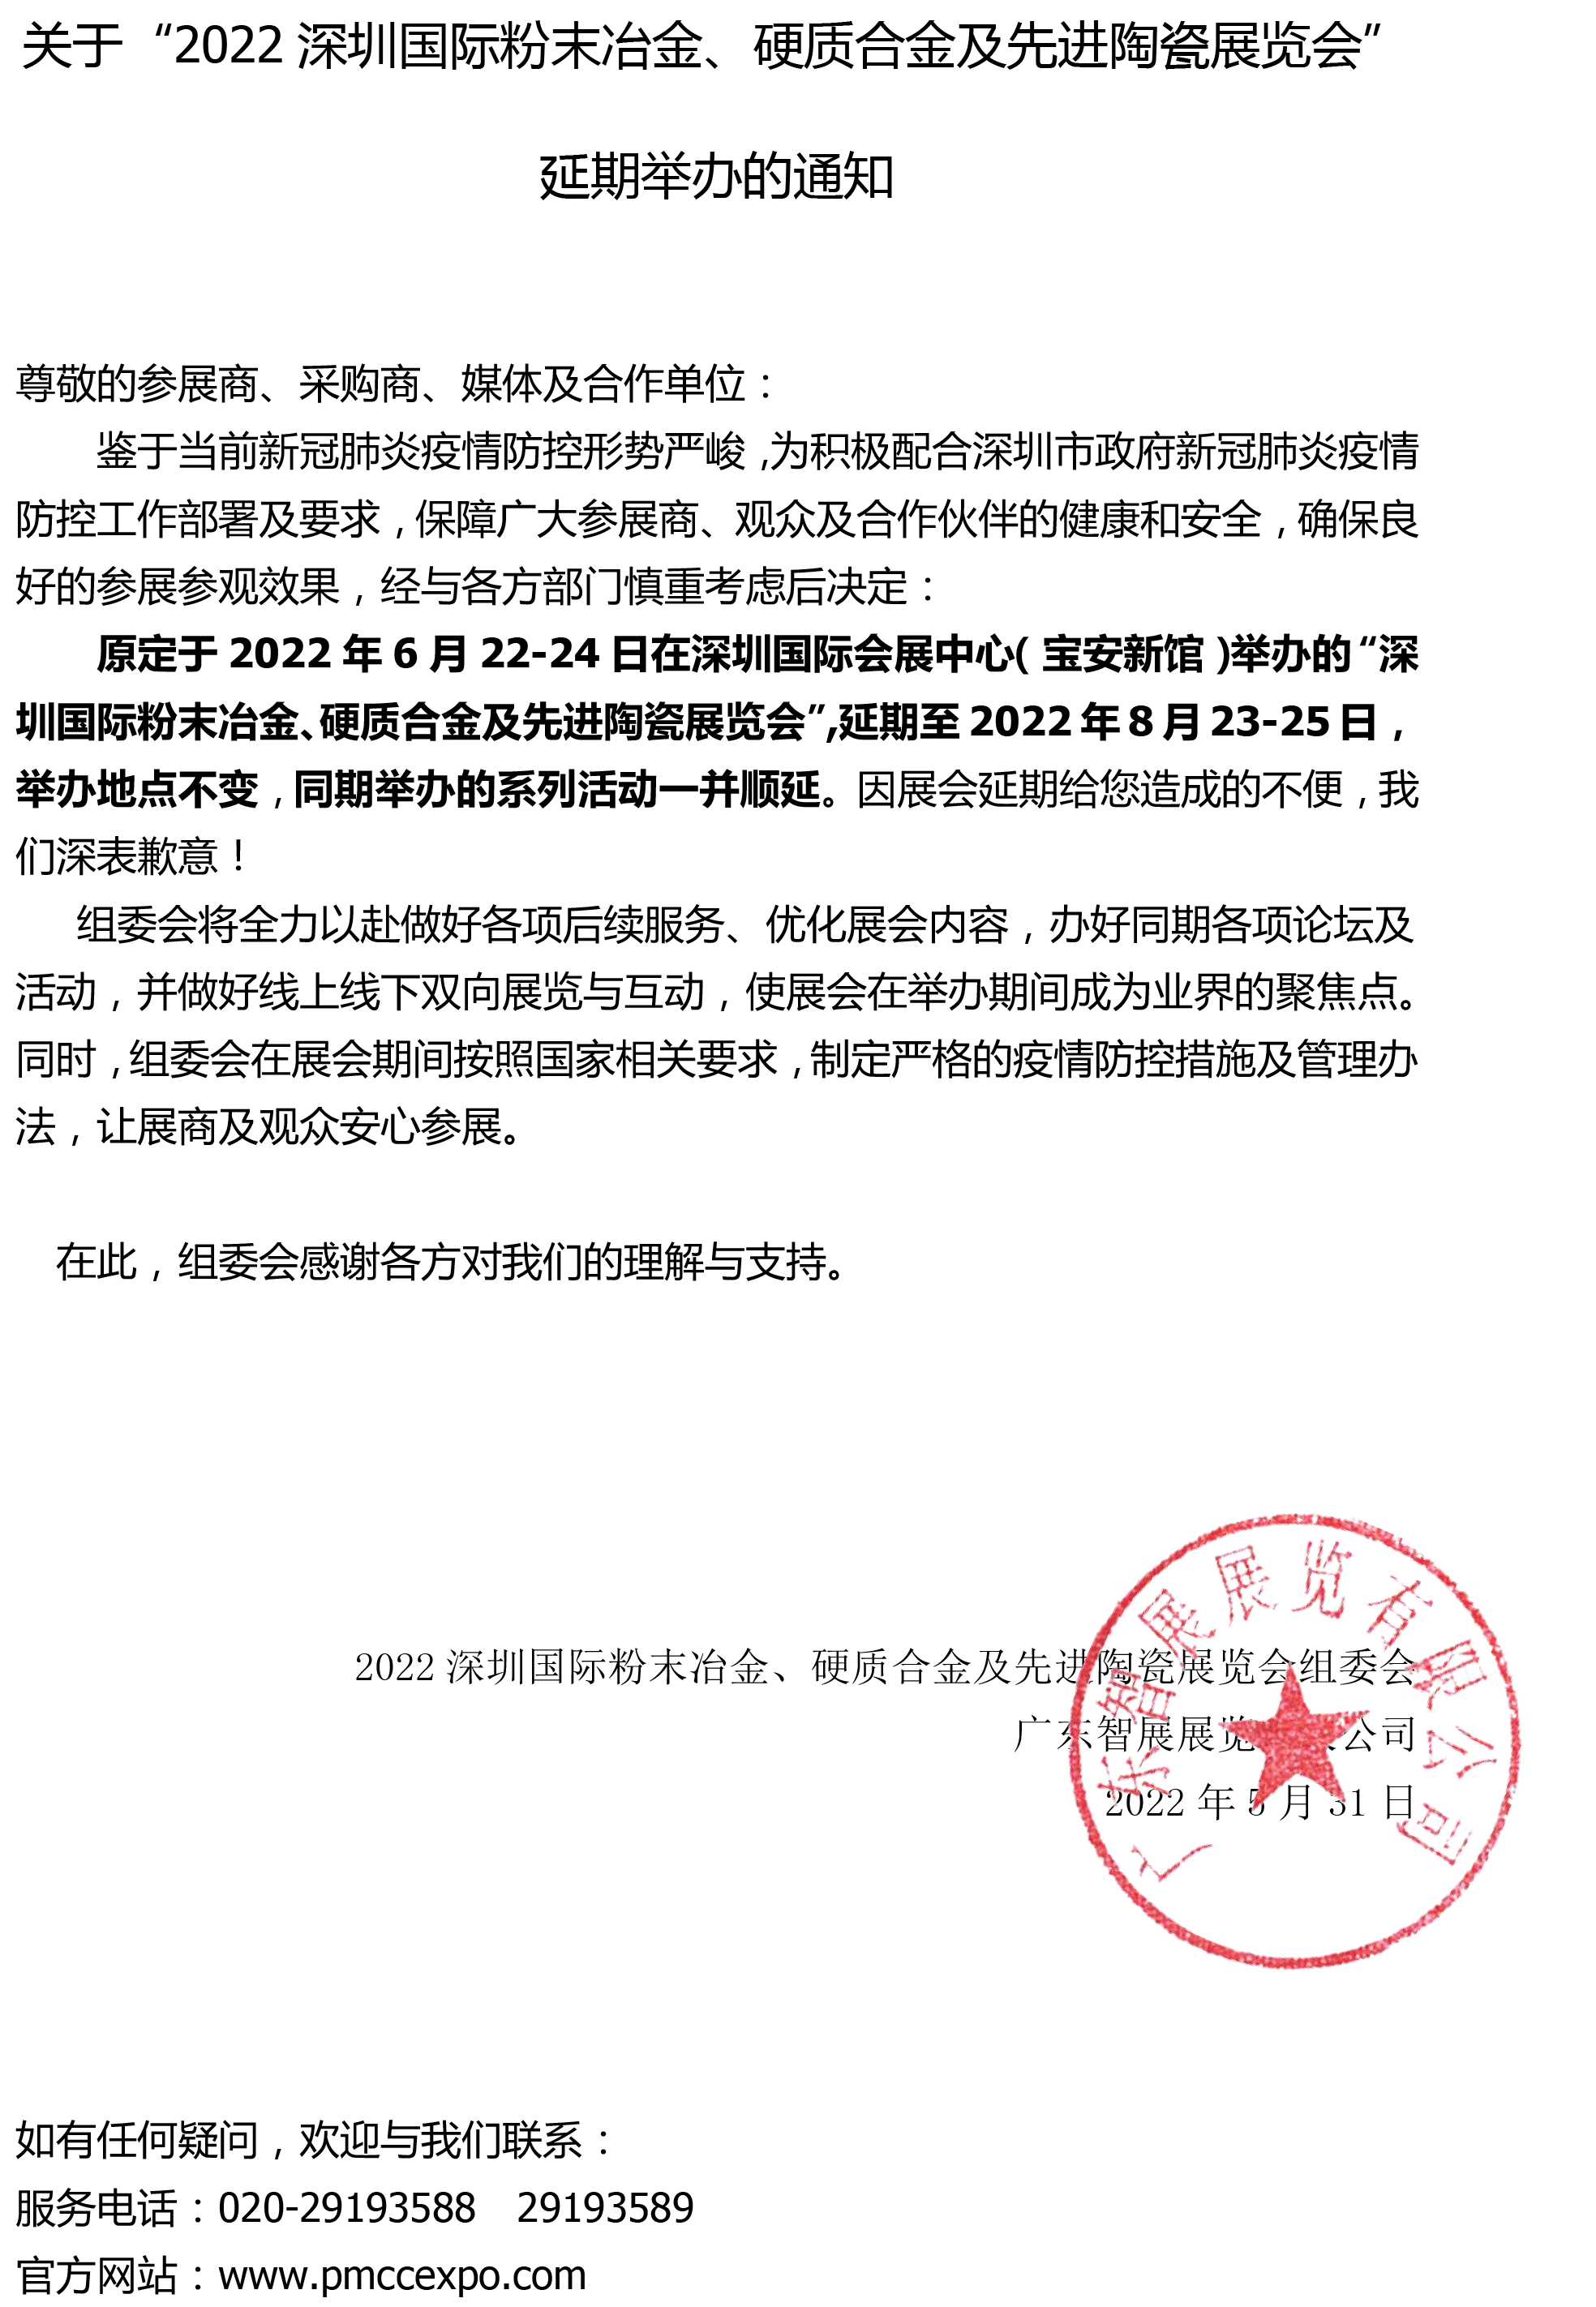 2022深圳粉末冶金、硬质合金及先进陶瓷展会--延期通知2.png